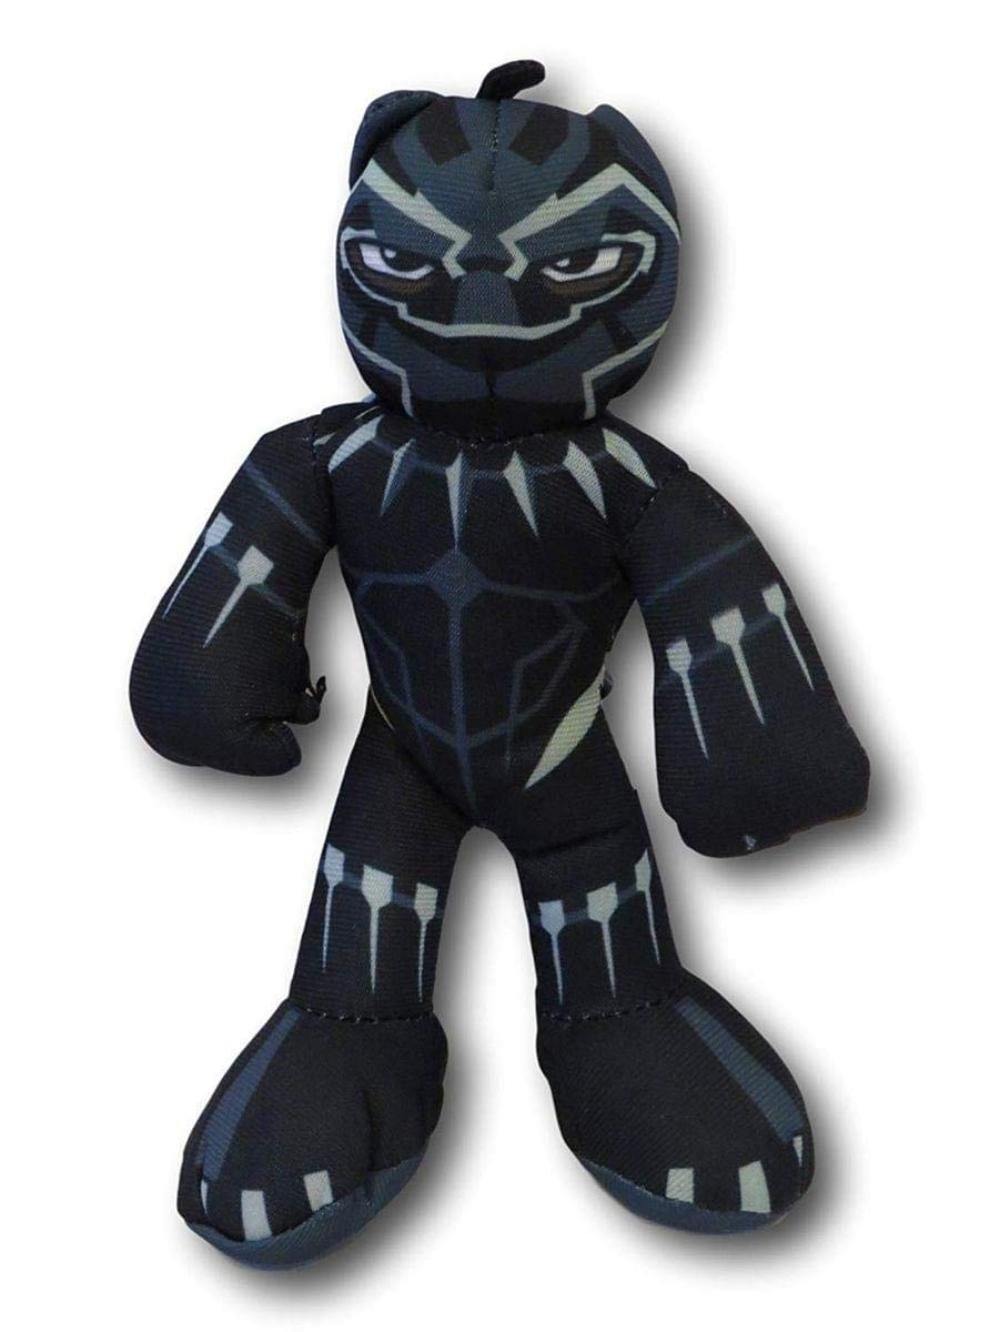 Black Panther Plush 14"